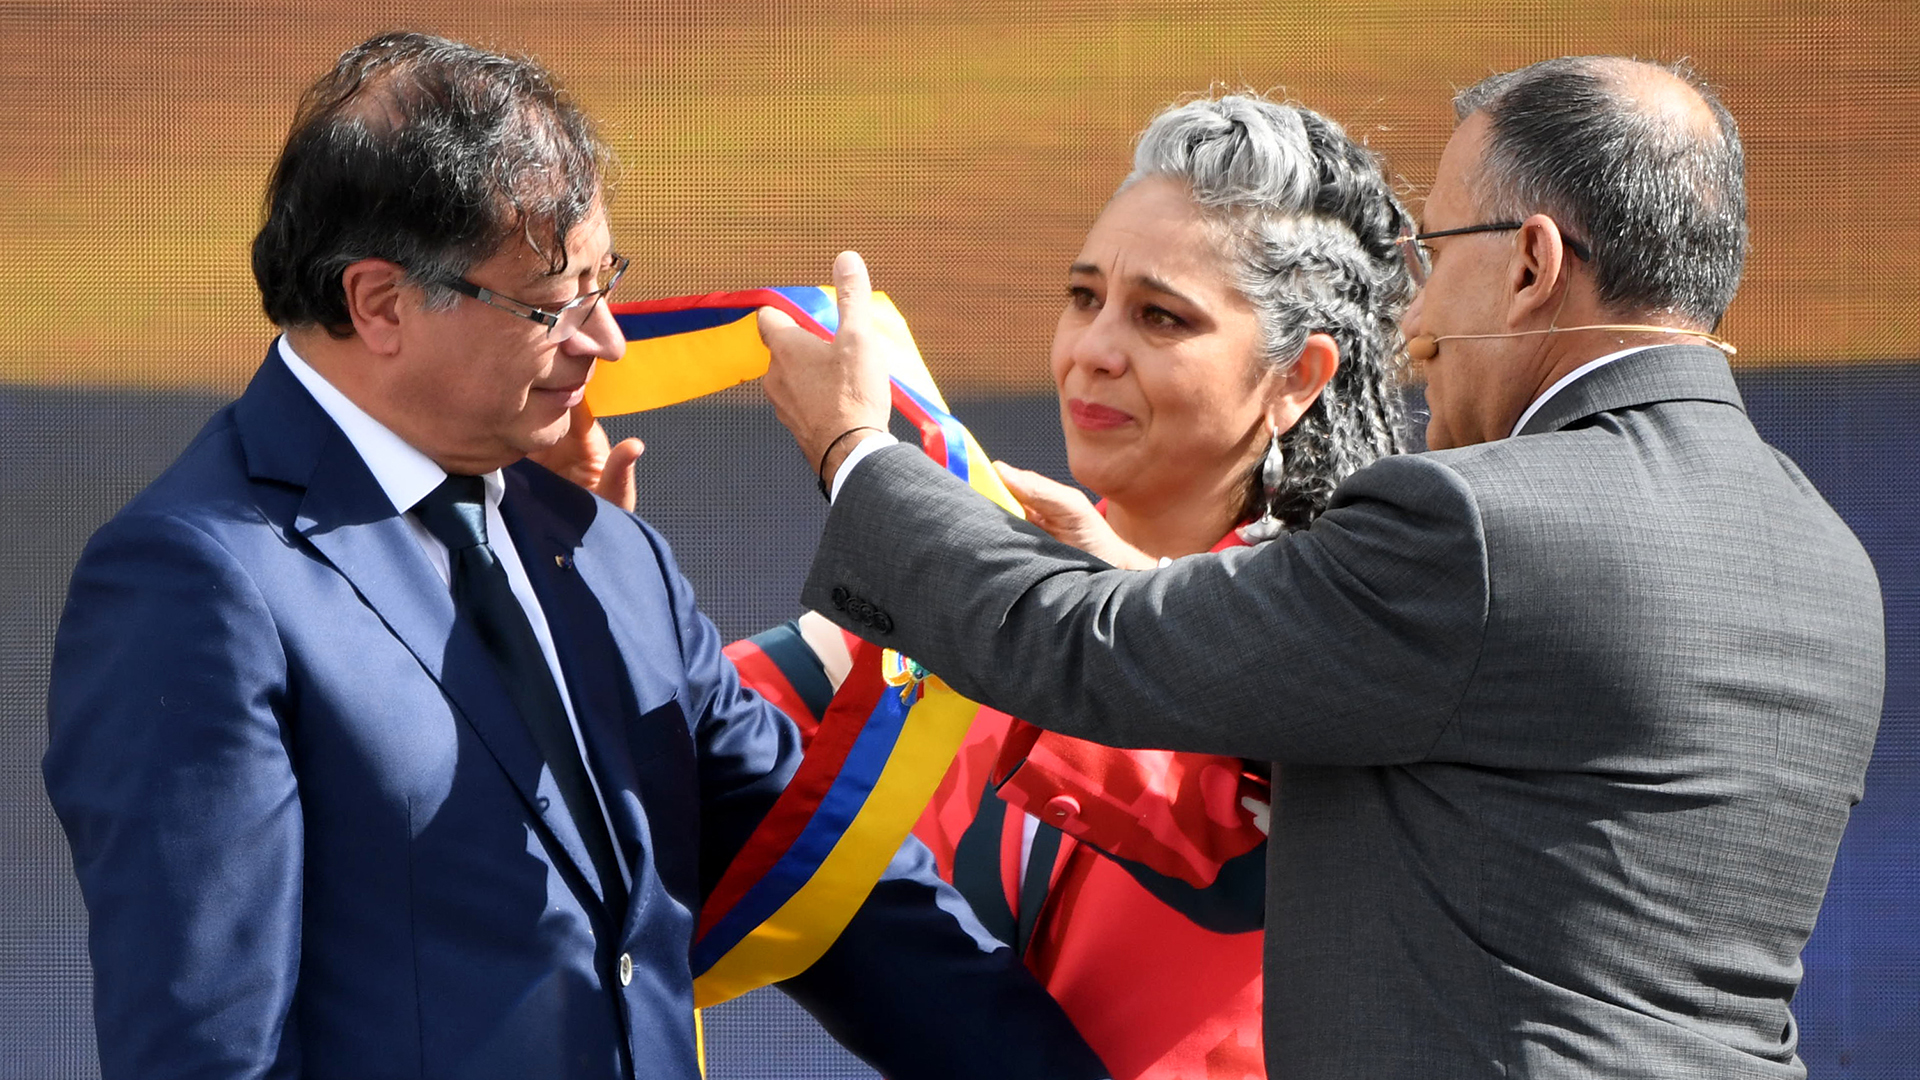 Gustavo Petro recibió la banda presidencial de manos de la senadora María José Pizarro y del presidente del Senado, Roy Barreras. (Photo by JUAN BARRETO / AFP)